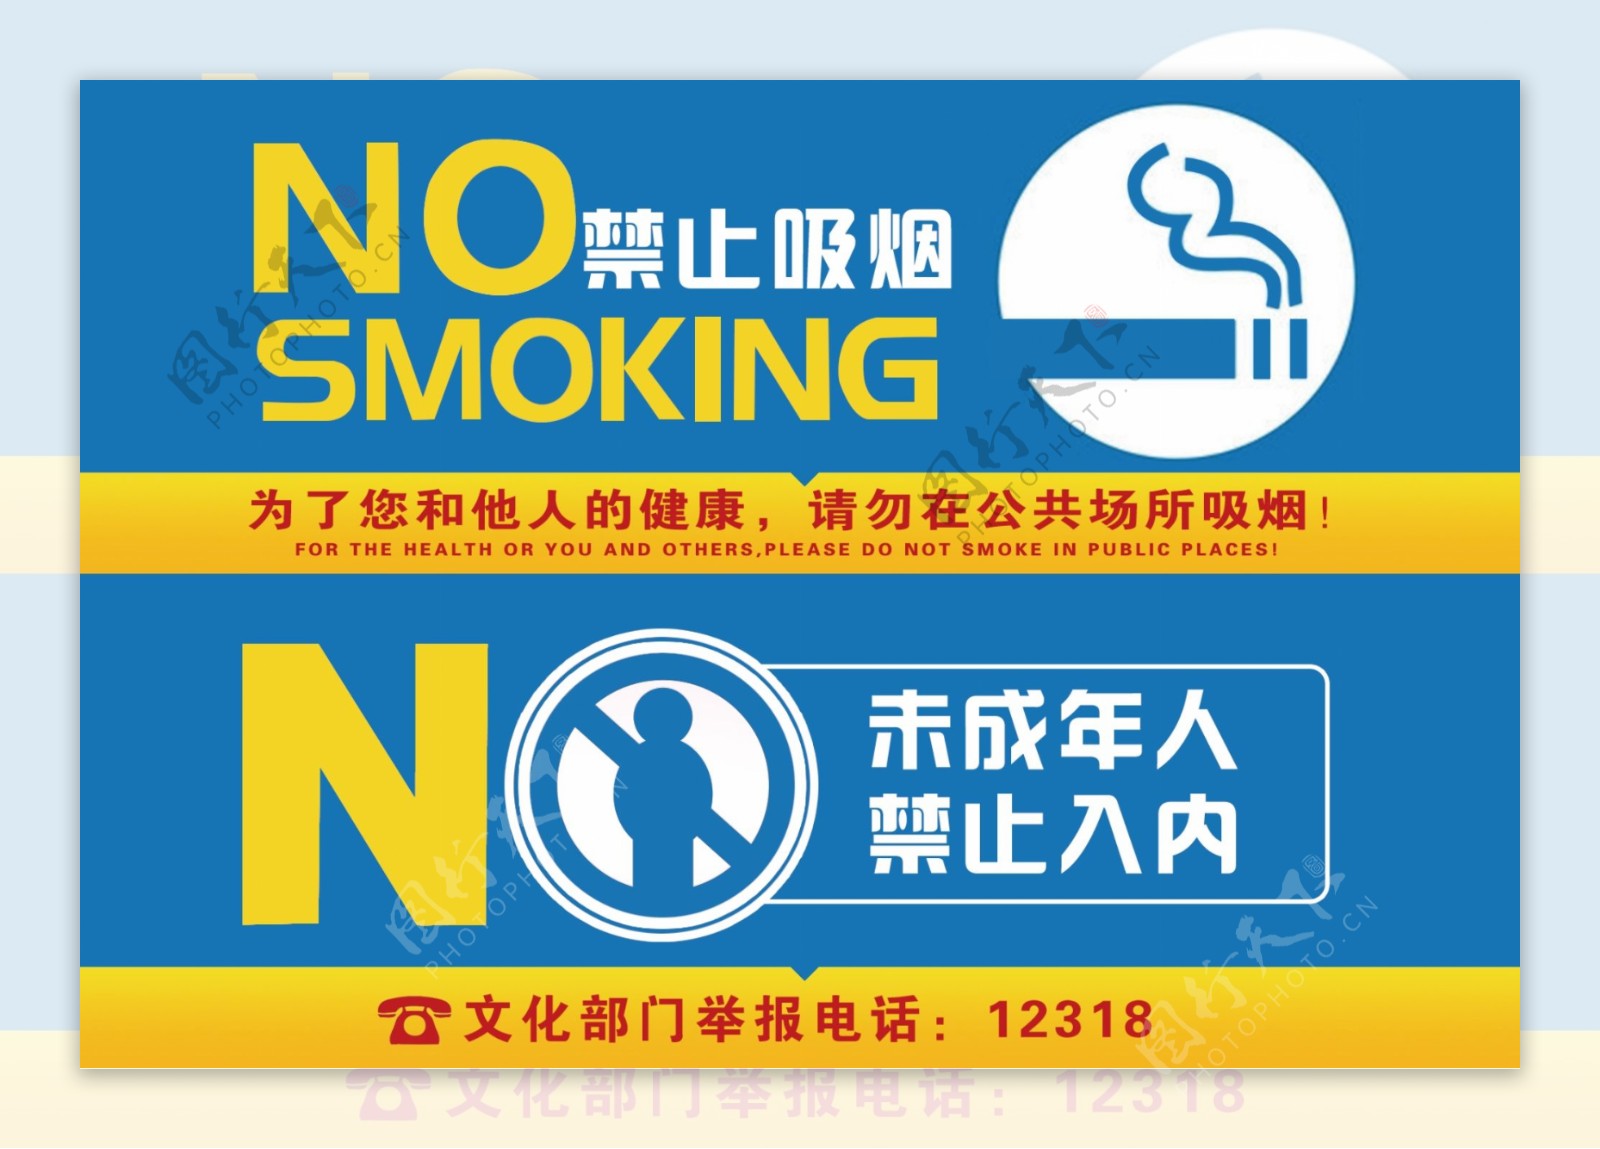 禁止未成年入内禁止吸烟